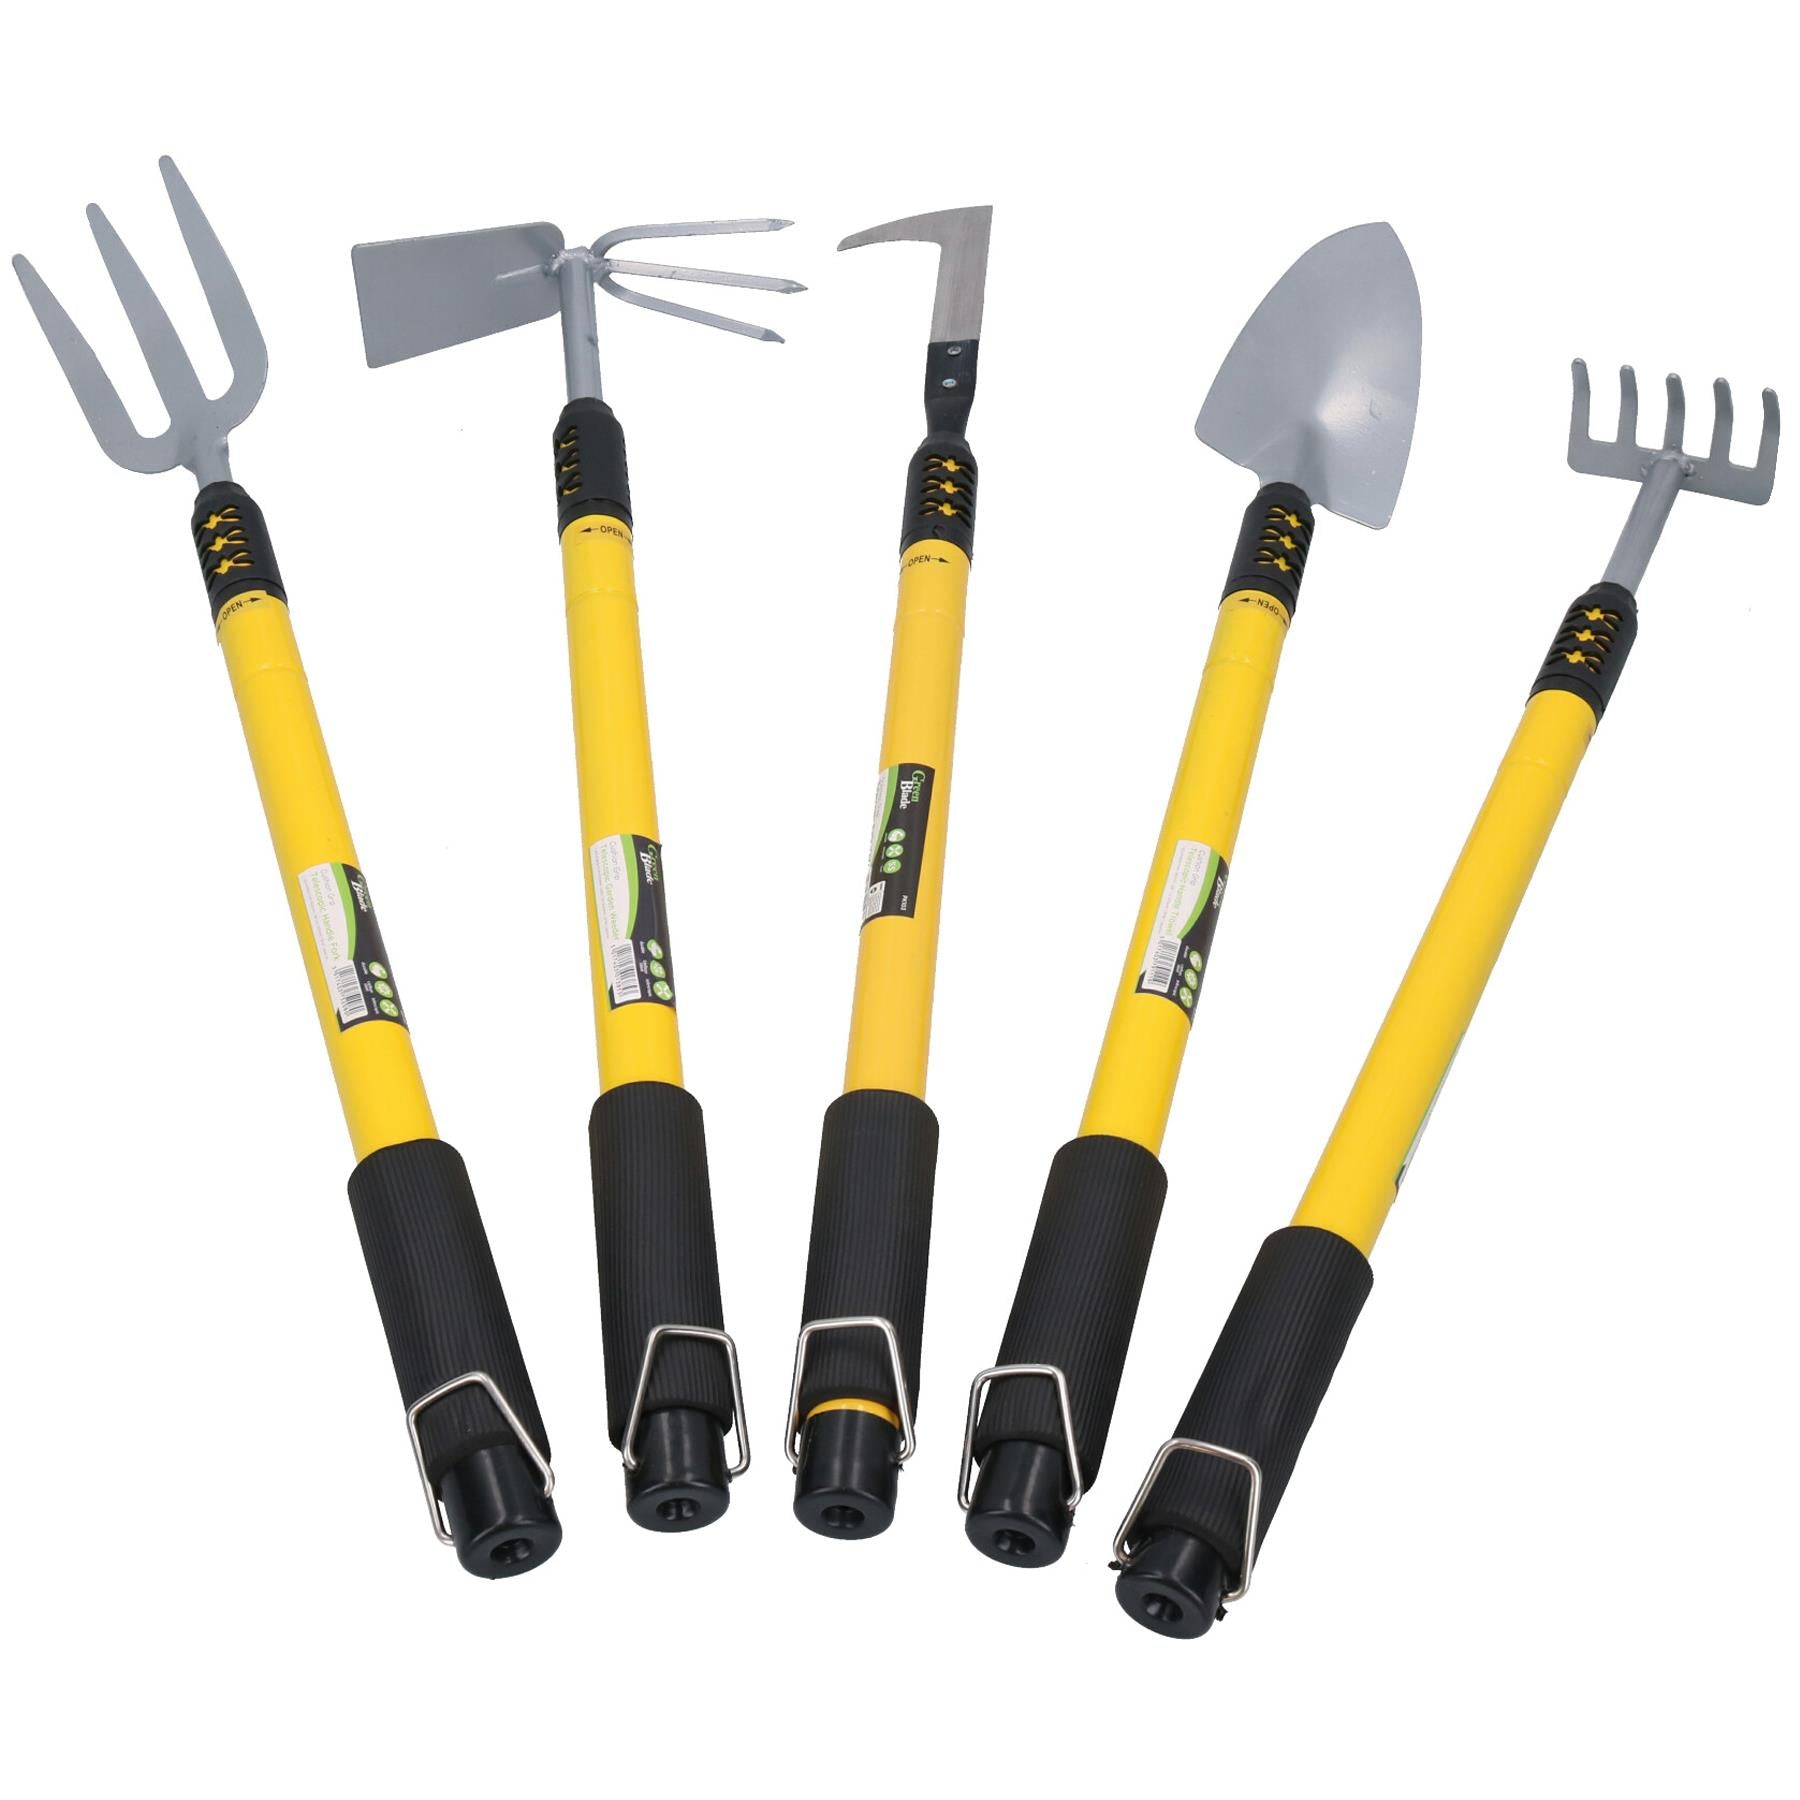 Telescopic Garden Tools Rake, Fork, Weeder, Shovel & Hoe 25” - 37” Gardening